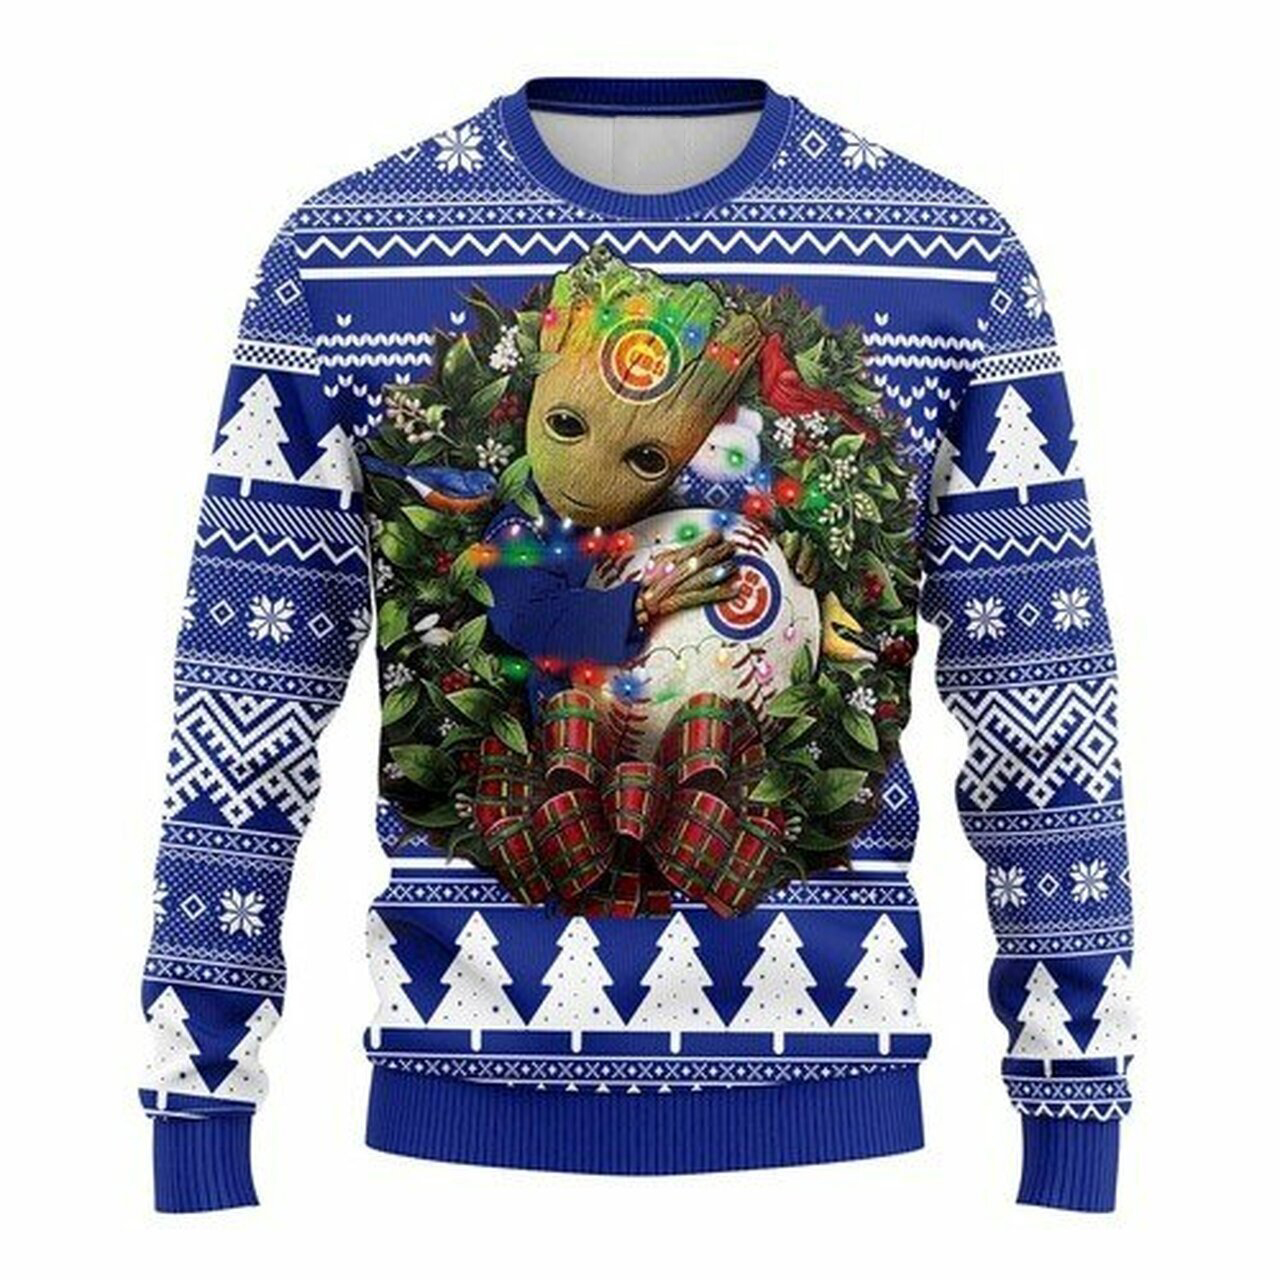 MLB Chicago Cubs Groot hug ugly christmas sweater